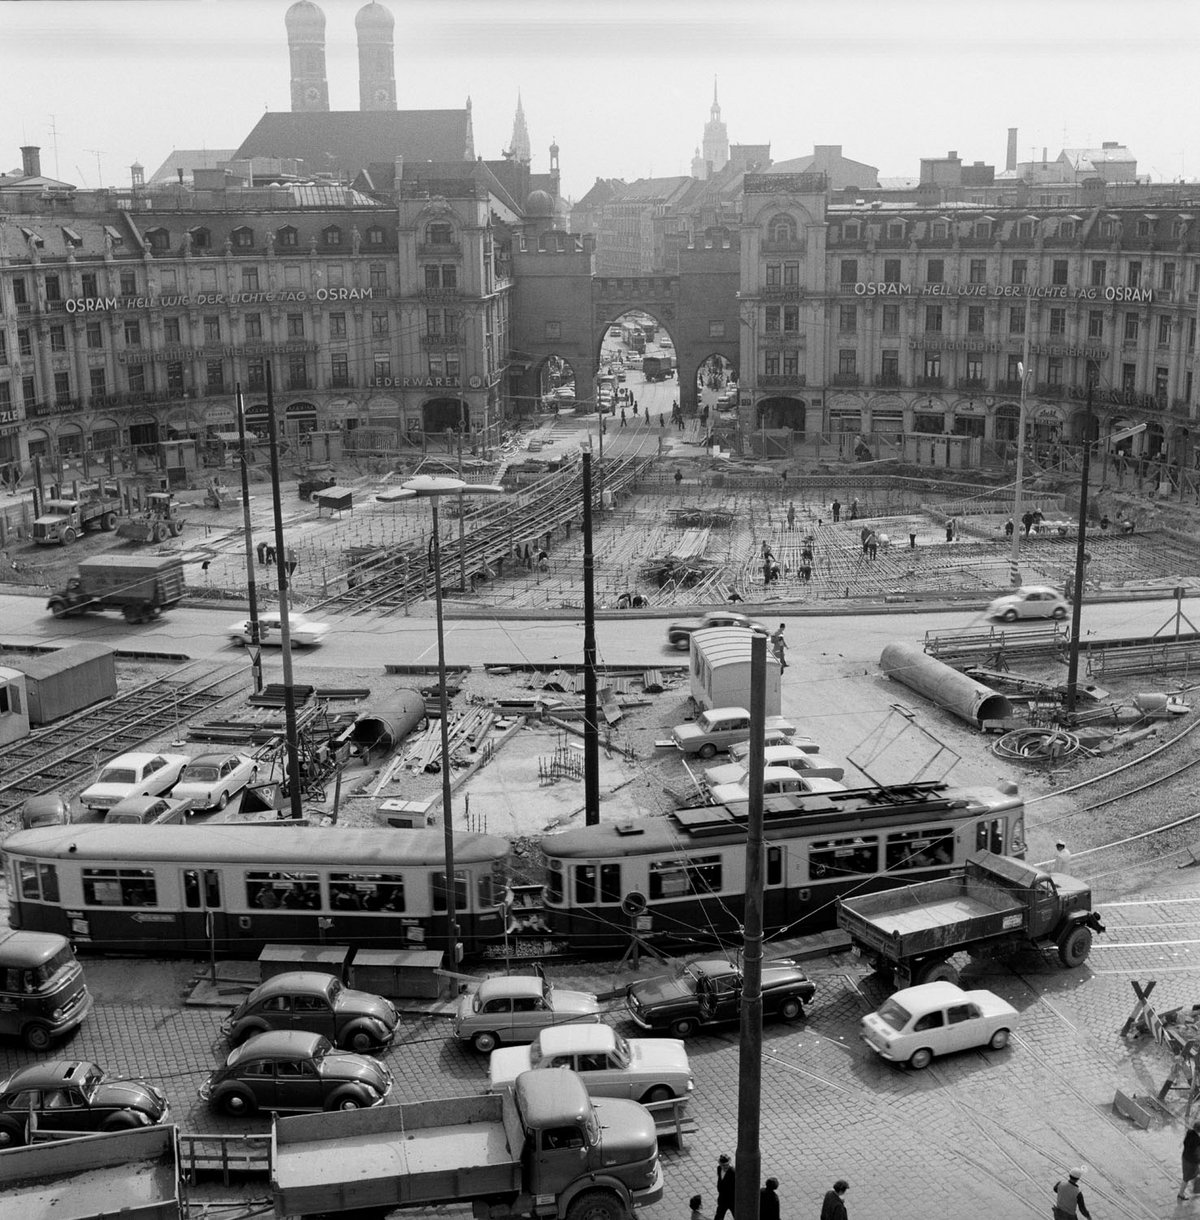 Schwarz-Weiß-Fotografie von einem verkehrsreichen Platz in München aus der Vogelperspektive.